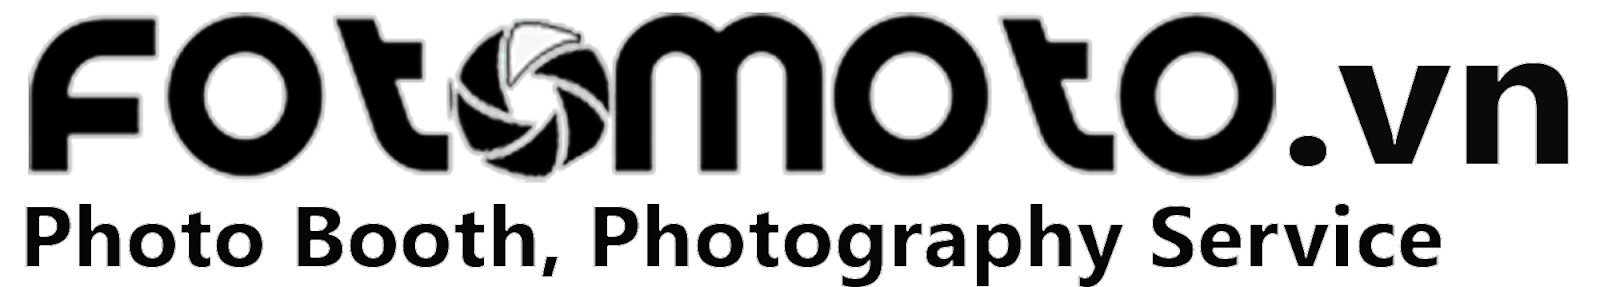 Fotomoto | Photobooth Chụp Hình Lấy Liền Tiệc Events, tiệc cưới, hội nghị..